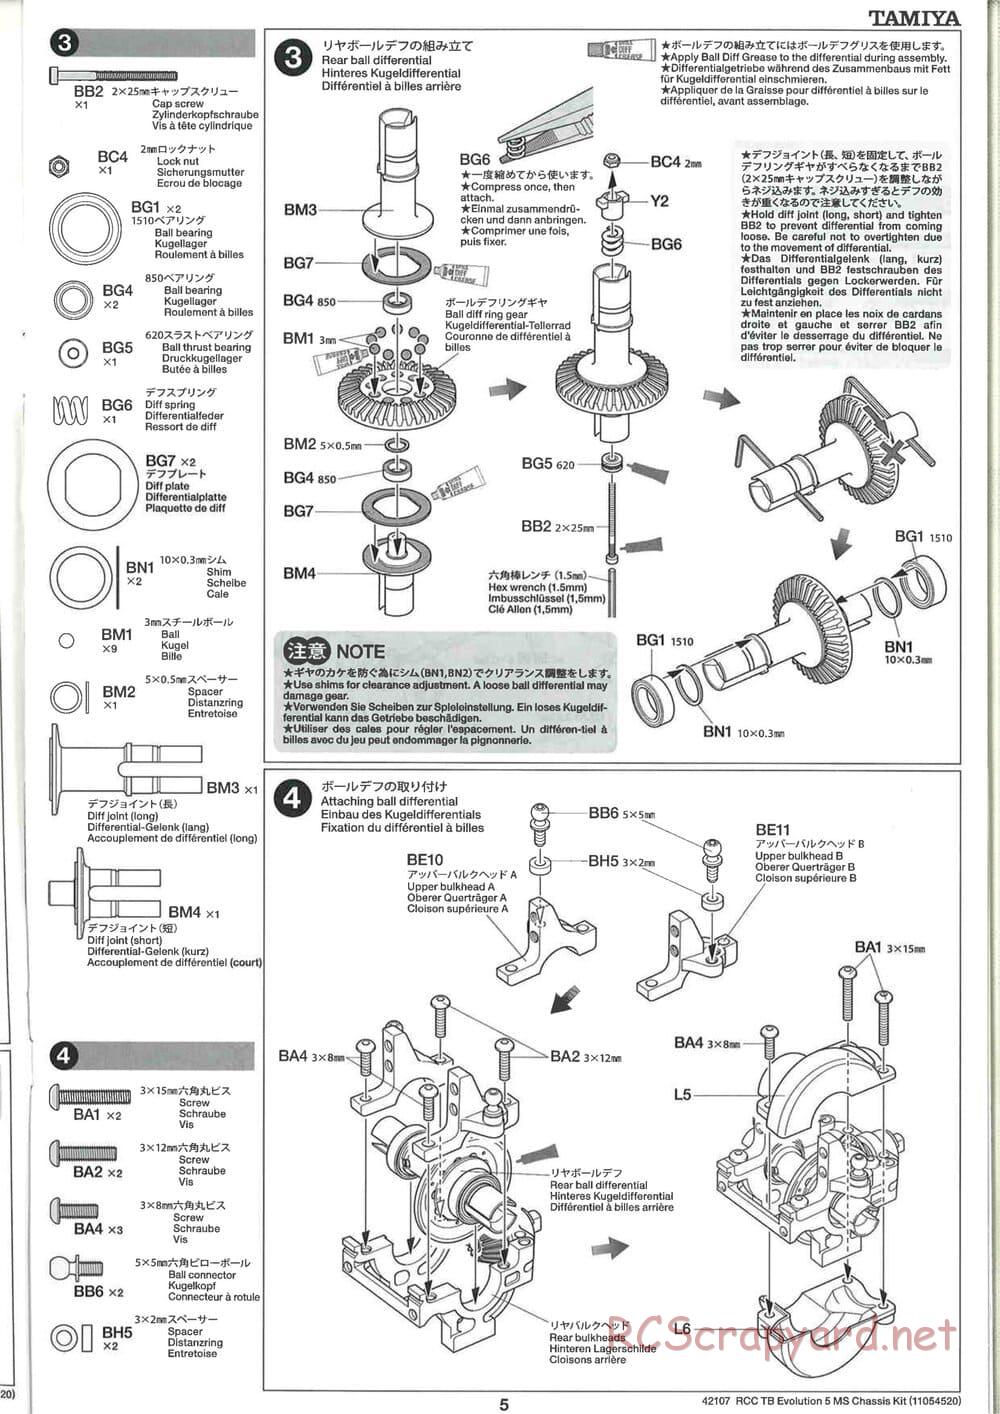 Tamiya - TB Evolution 5 MS Chassis - Manual - Page 5